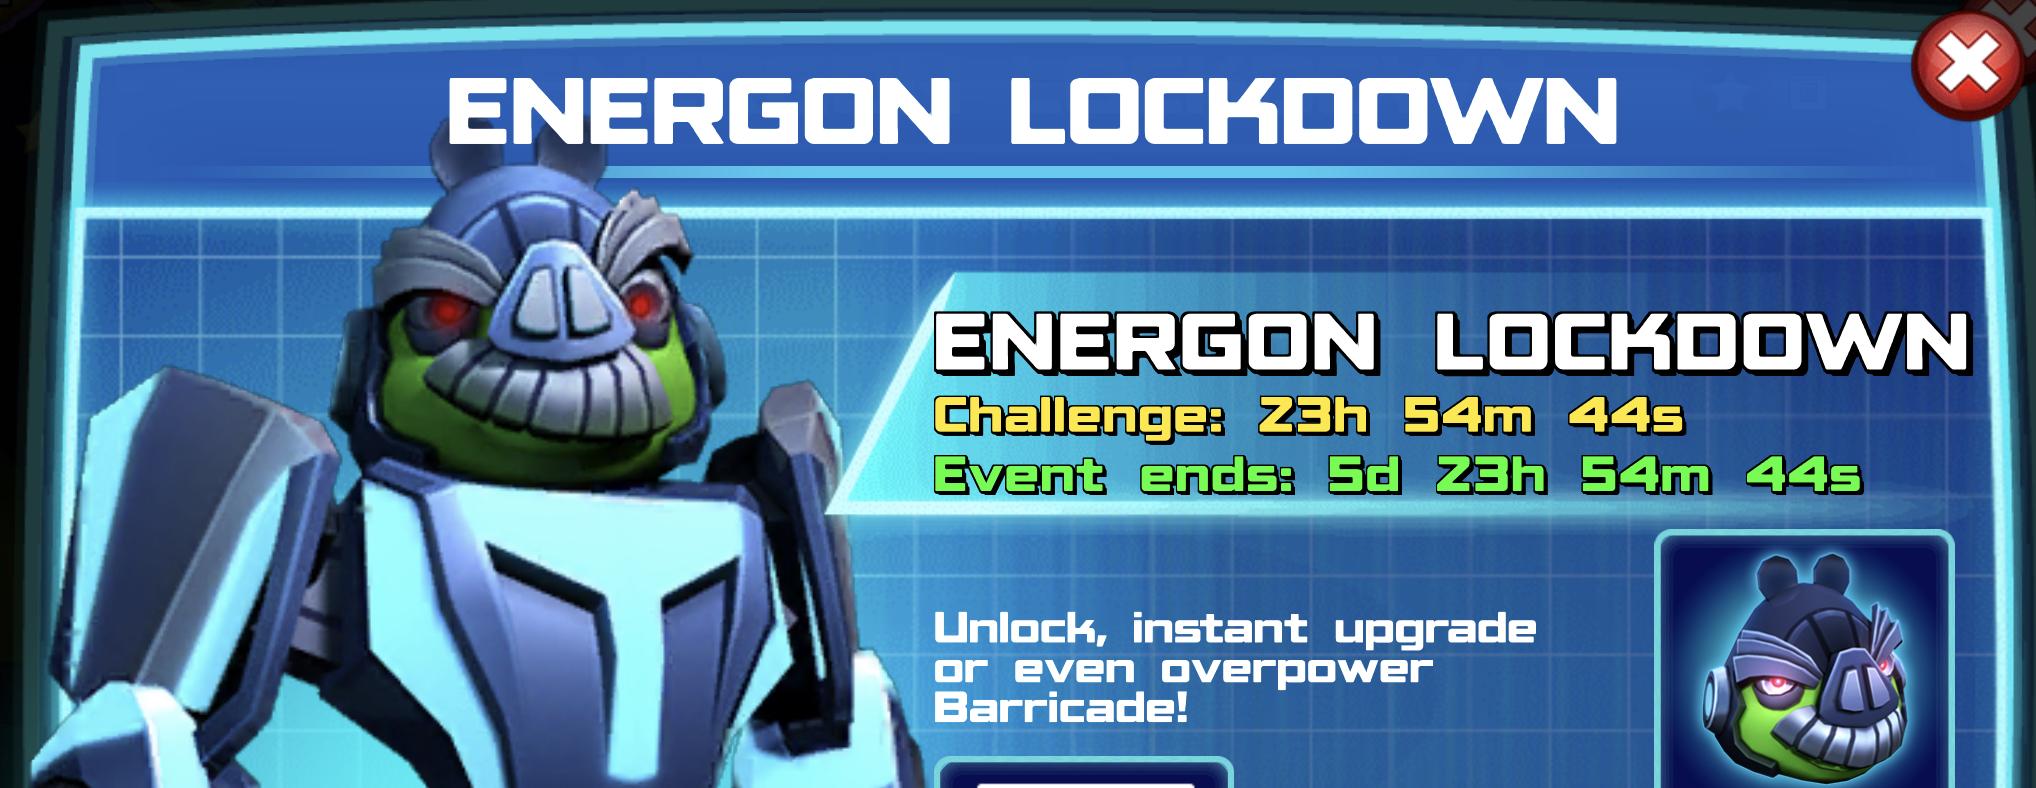 The event banner for Energon Lockdown